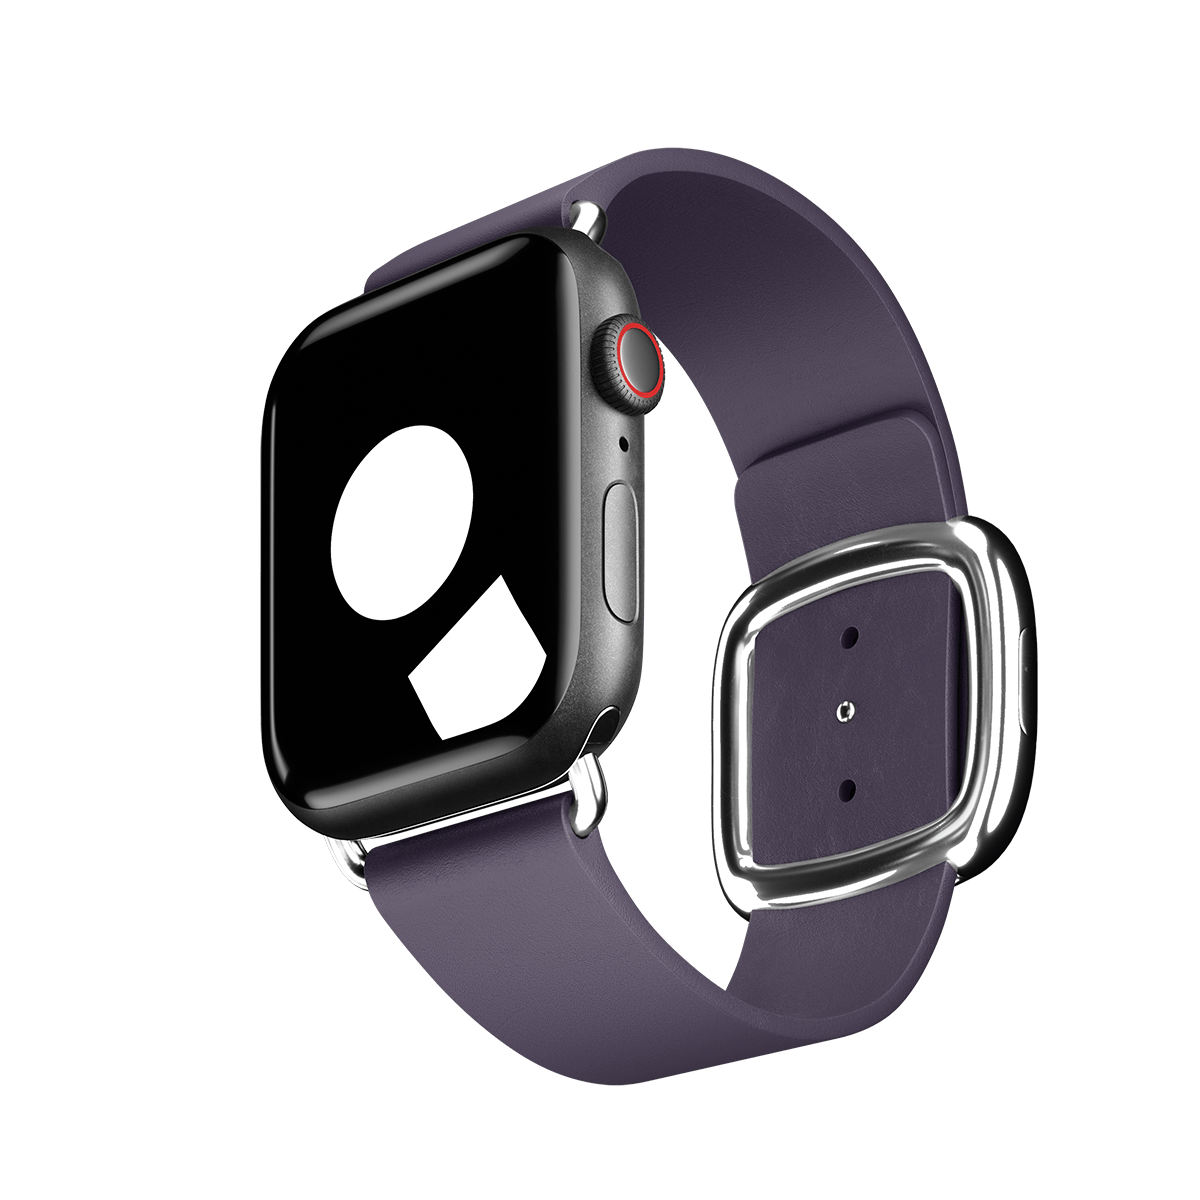 M モダンバックル ウィステリア  Apple watch